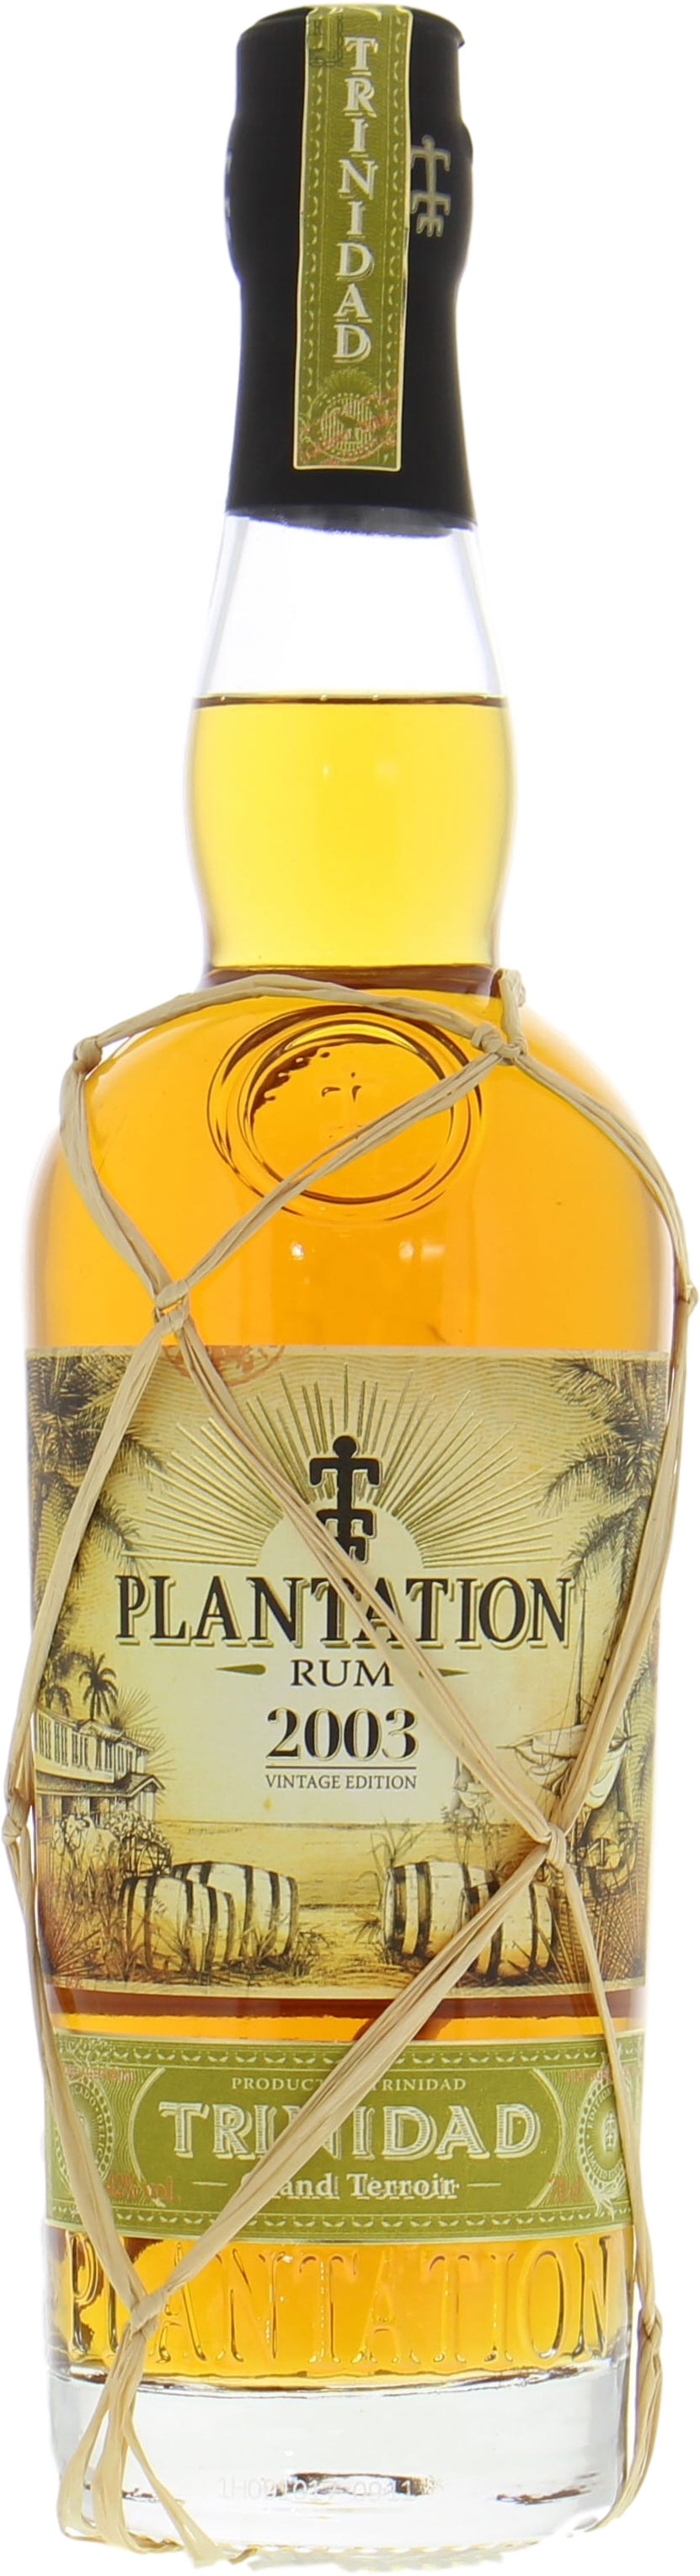 Plantation Rum - Trinidad Vintage Edition 2003 42% 2003